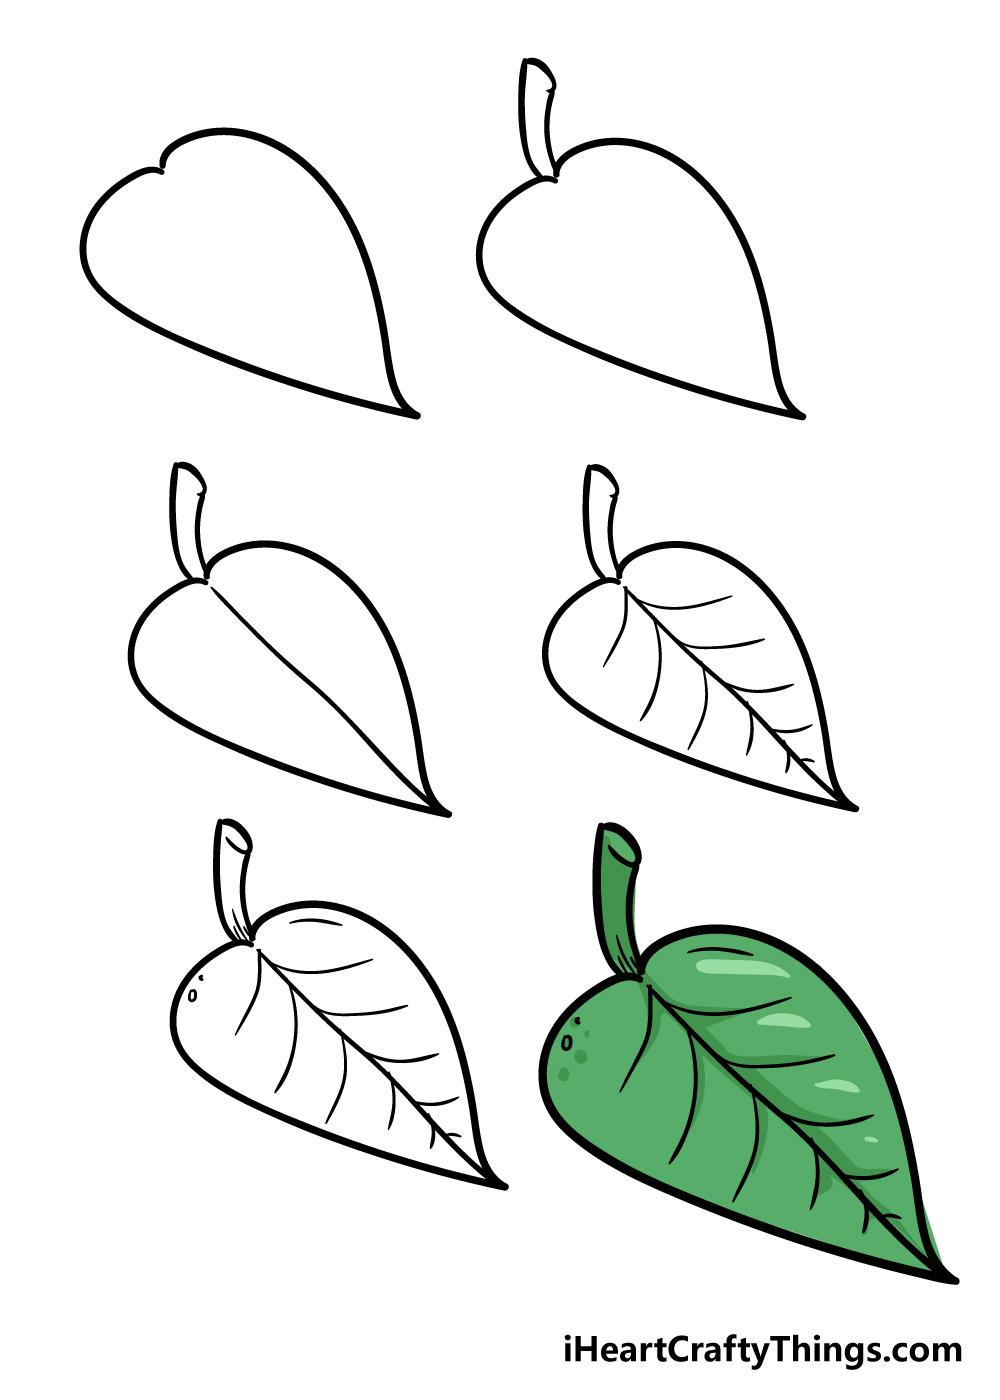 LEaf in 6 steps - Hướng dẫn cách vẽ chiếc lá cây đơn giản với 6 bước cơ bản